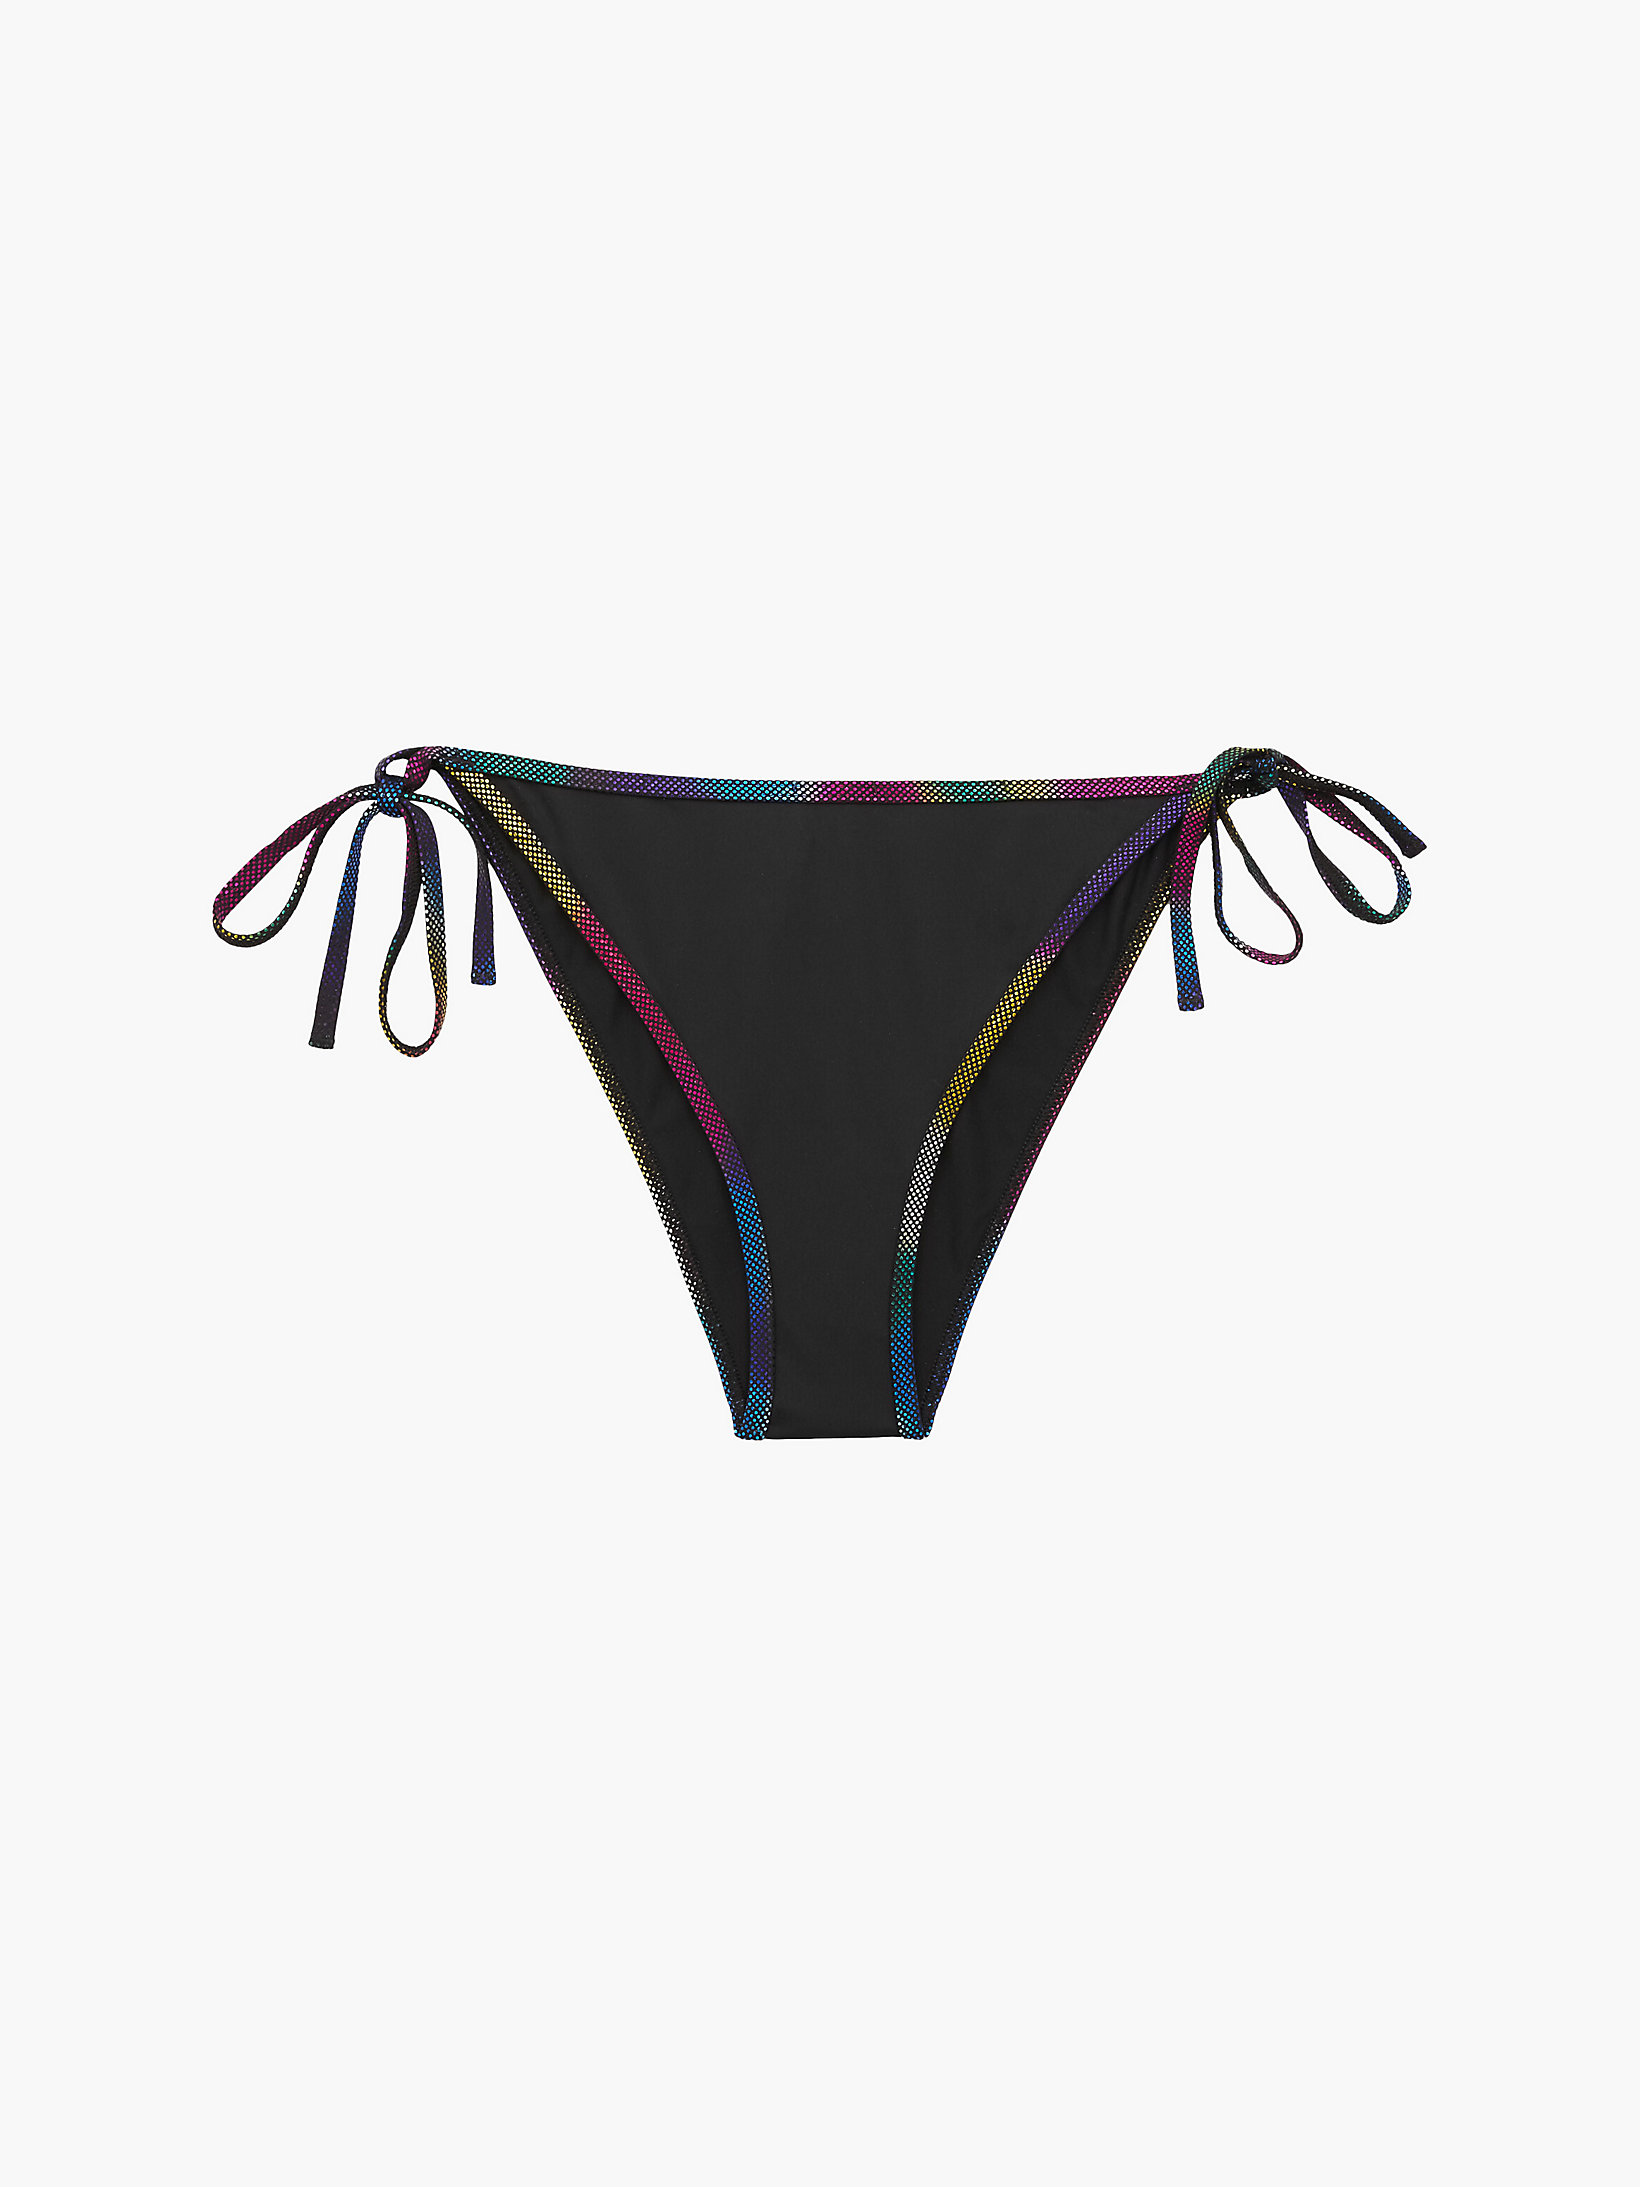 Pvh Black Tie Side Bikini Bottom - Pride undefined women Calvin Klein